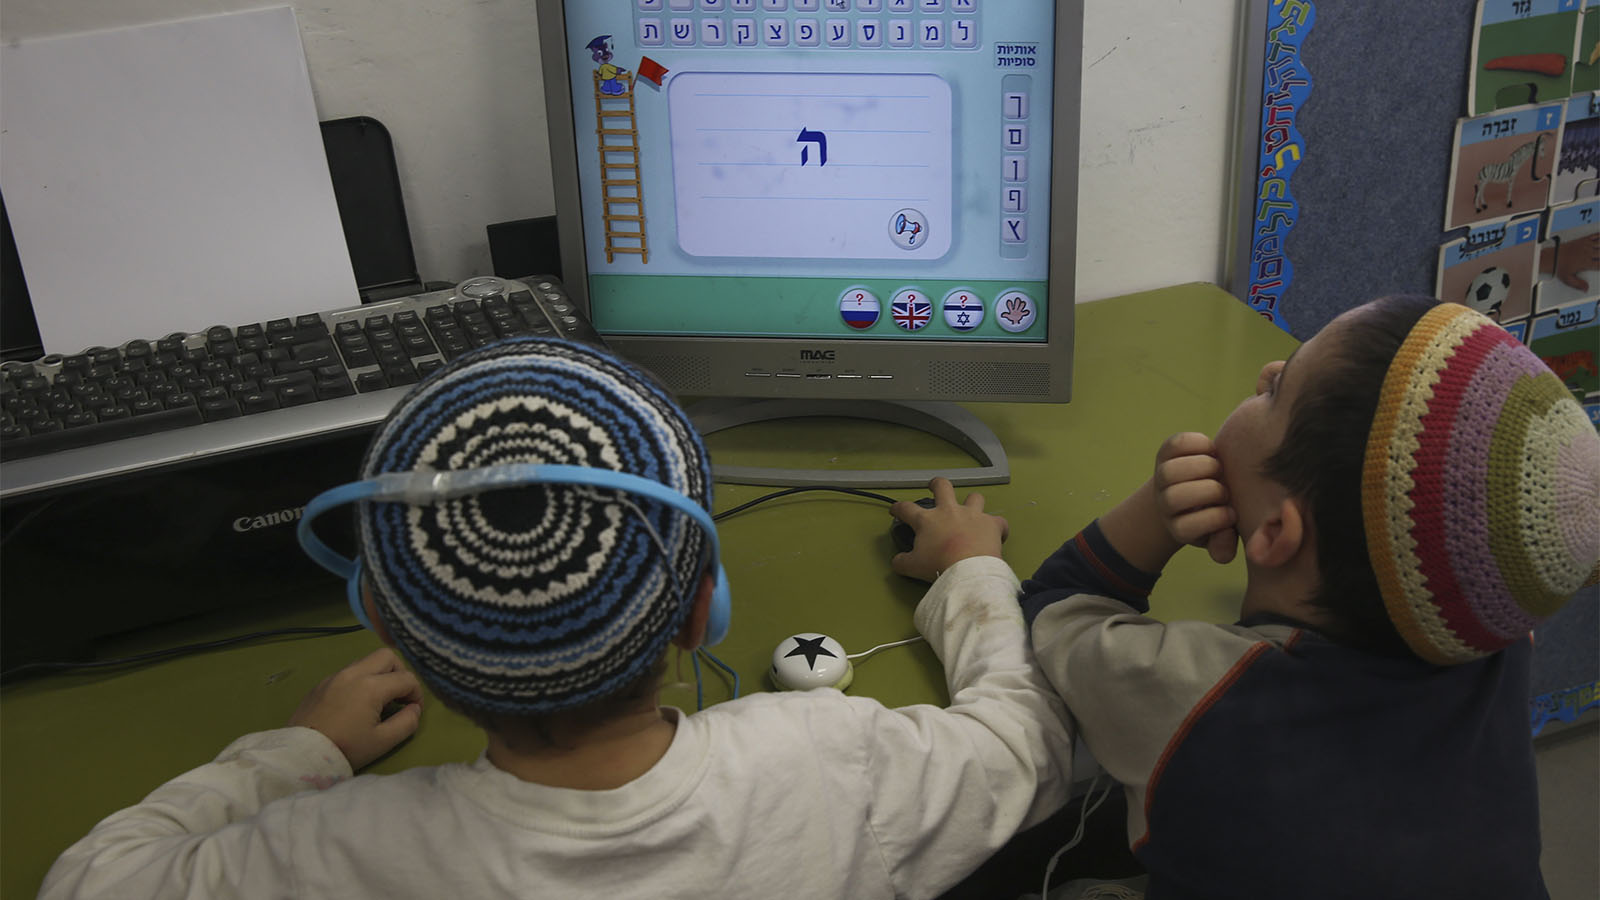 תלמידים משתמשים במחשב ככלי למידה. למצולמים אין קש לכתבה (צילום: נתי שוחט/פלאש90)